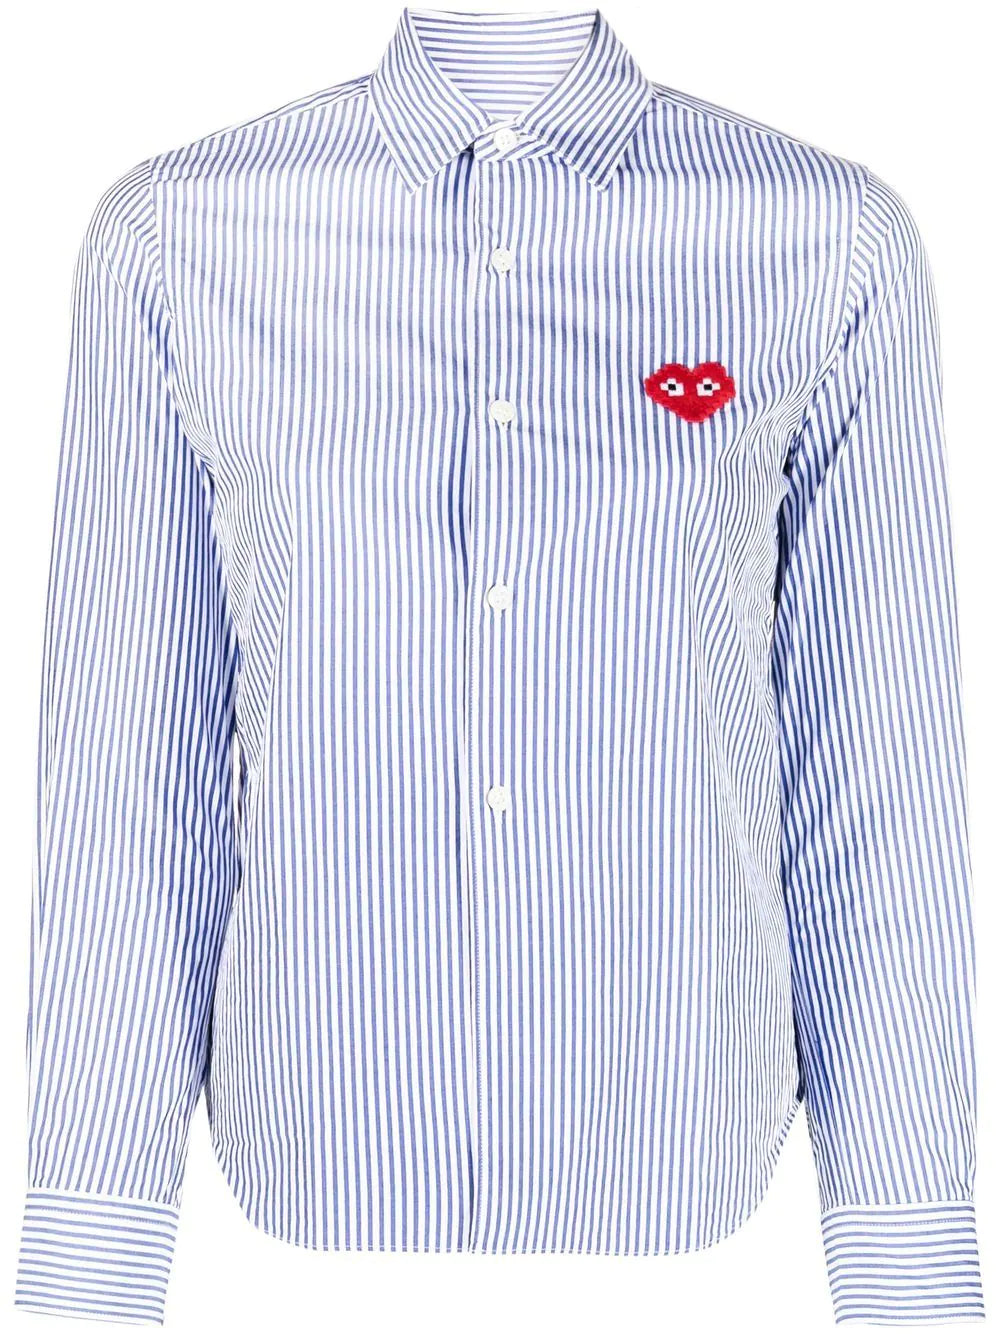 Camicia rigata con logo a forma di cuore Invader